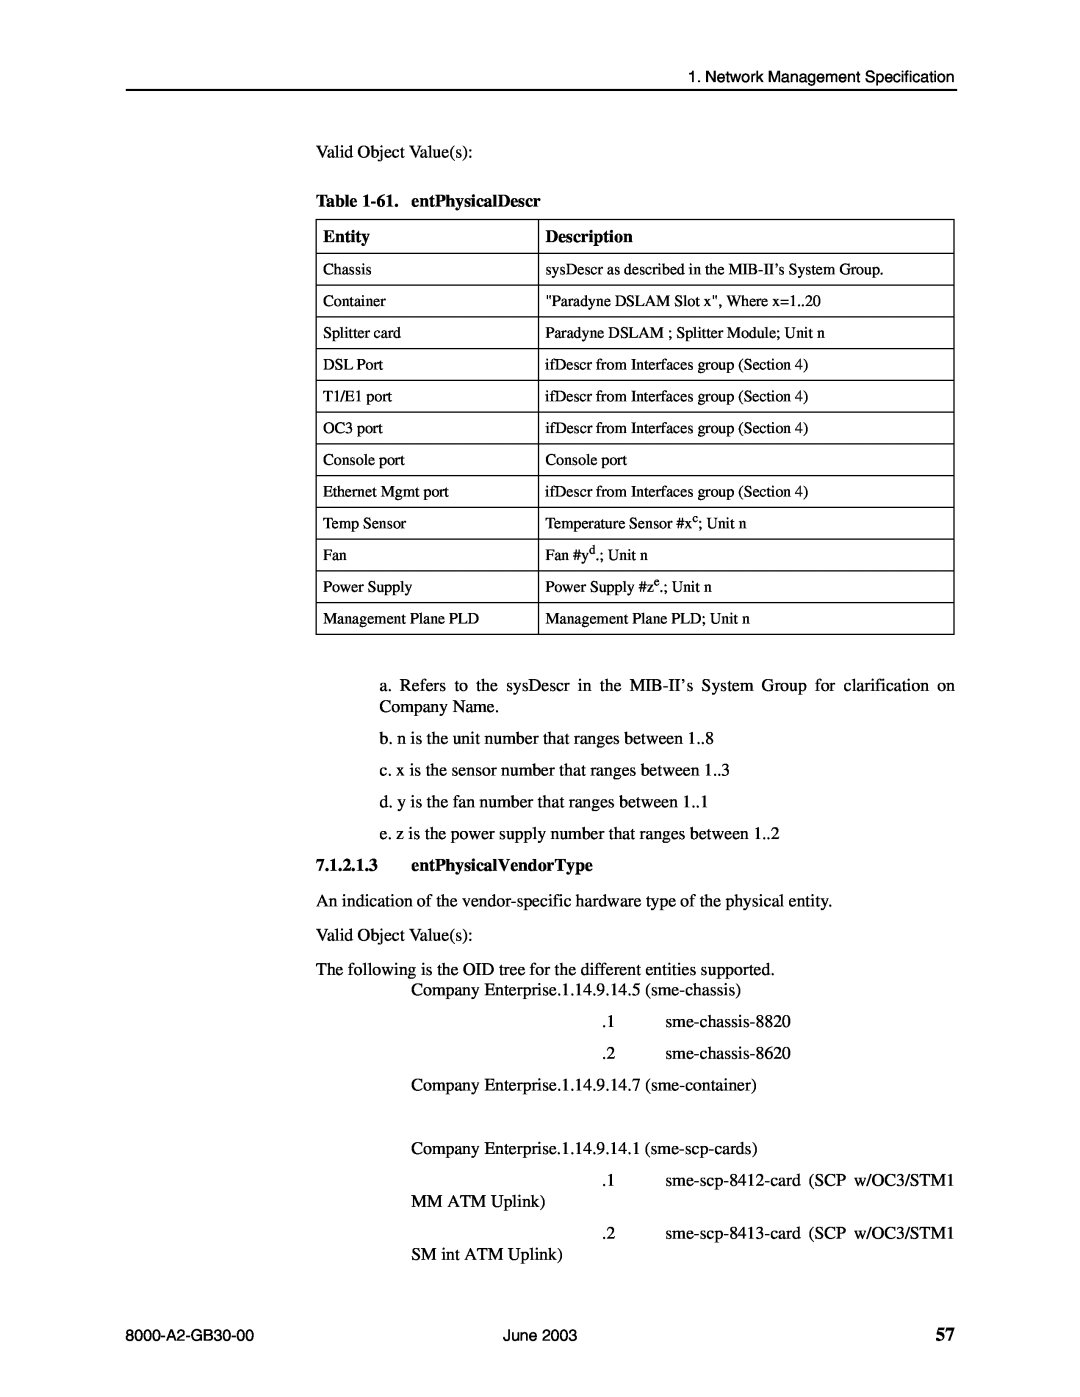 Paradyne 8620, 8820 manual 61. entPhysicalDescr, entPhysicalVendorType, Entity, Description 